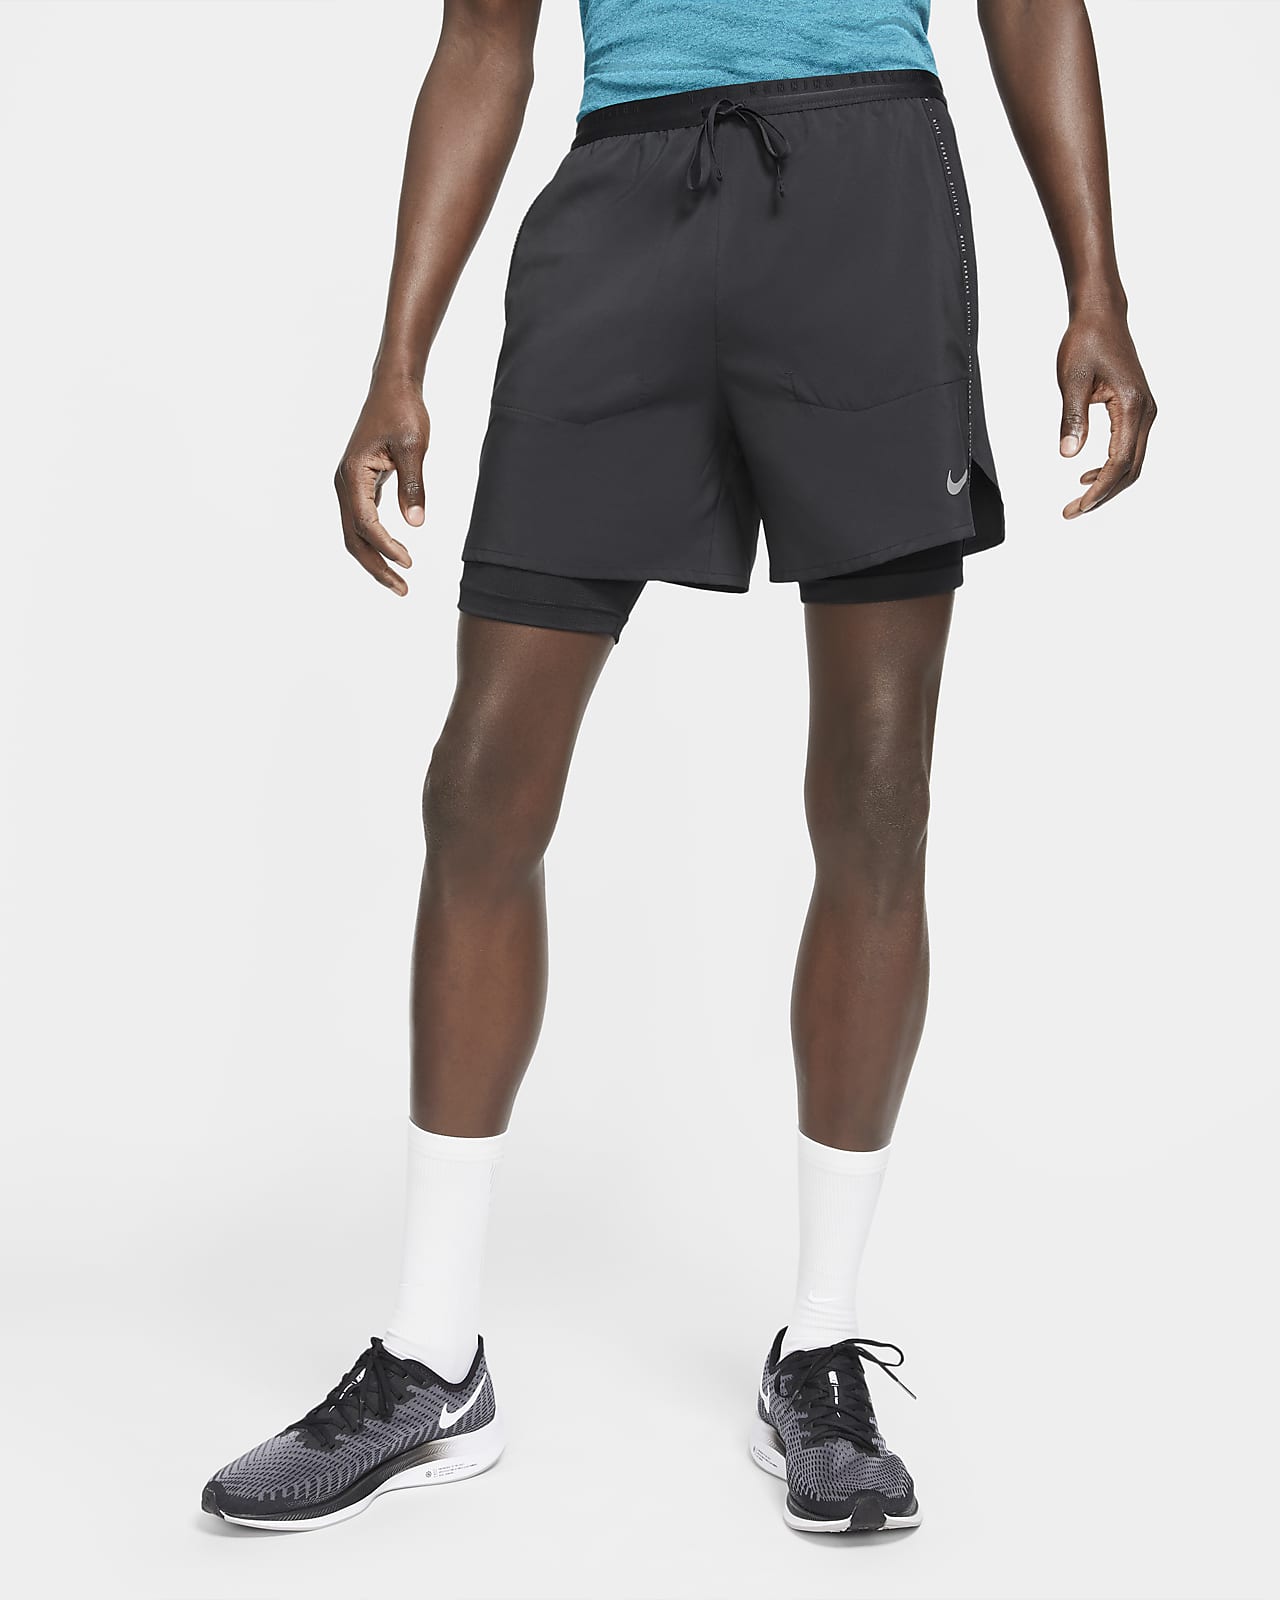 Oceanien udgør Ewell Nike Flex Stride Run Division Men's Hybrid Running Shorts. Nike.com